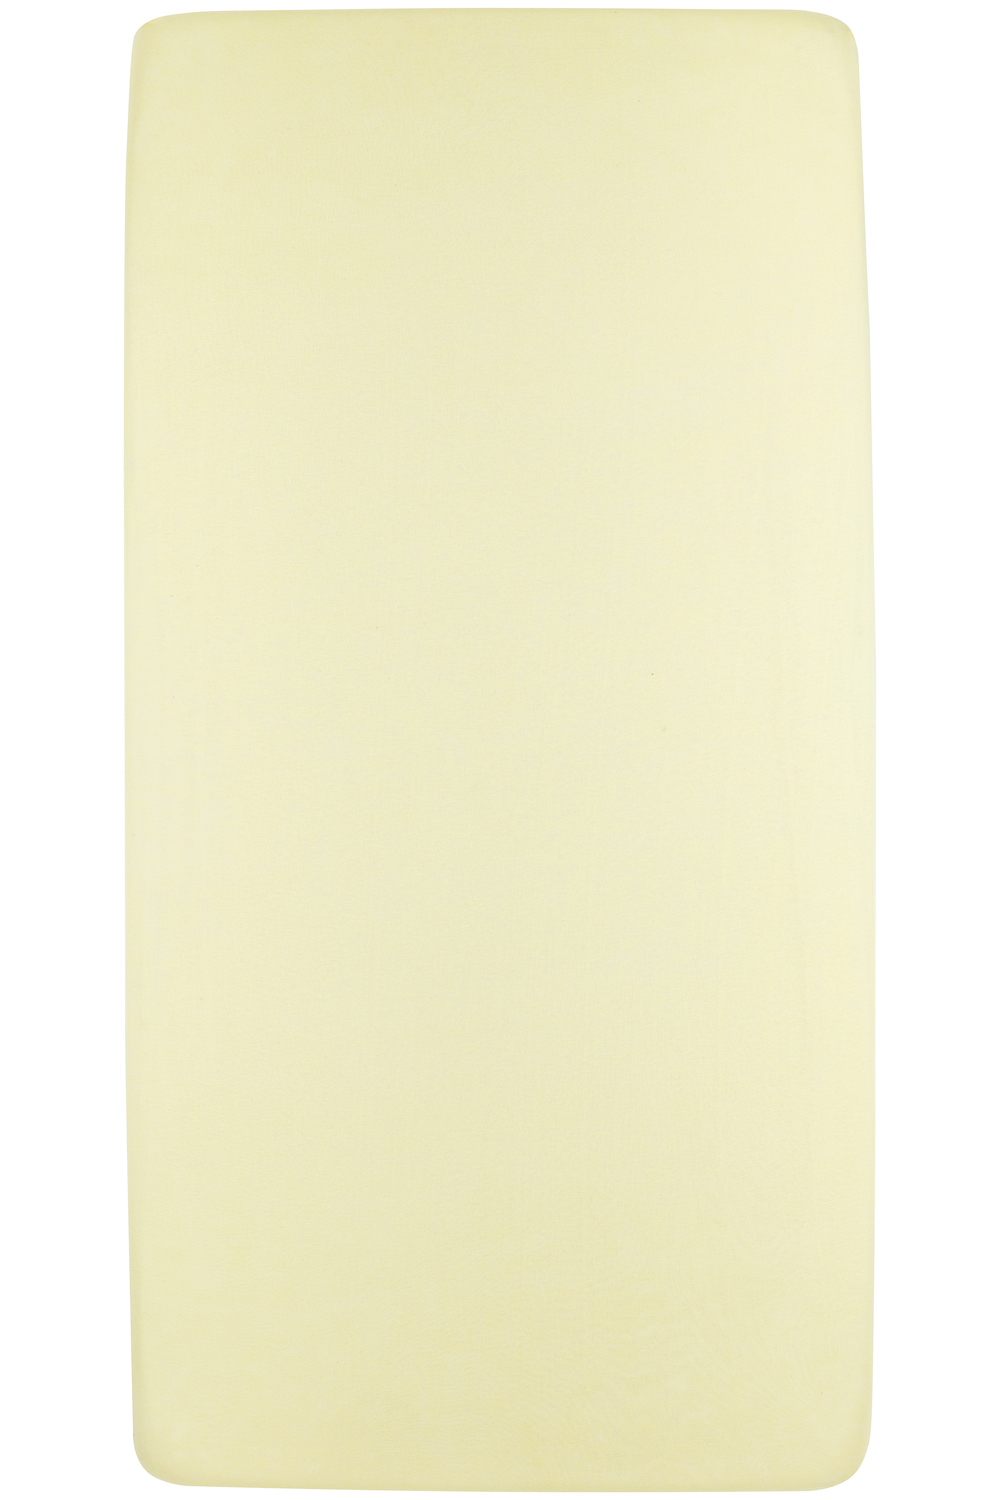 Hoeslaken eenpersoonsbed Uni - soft yellow - 90x200cm